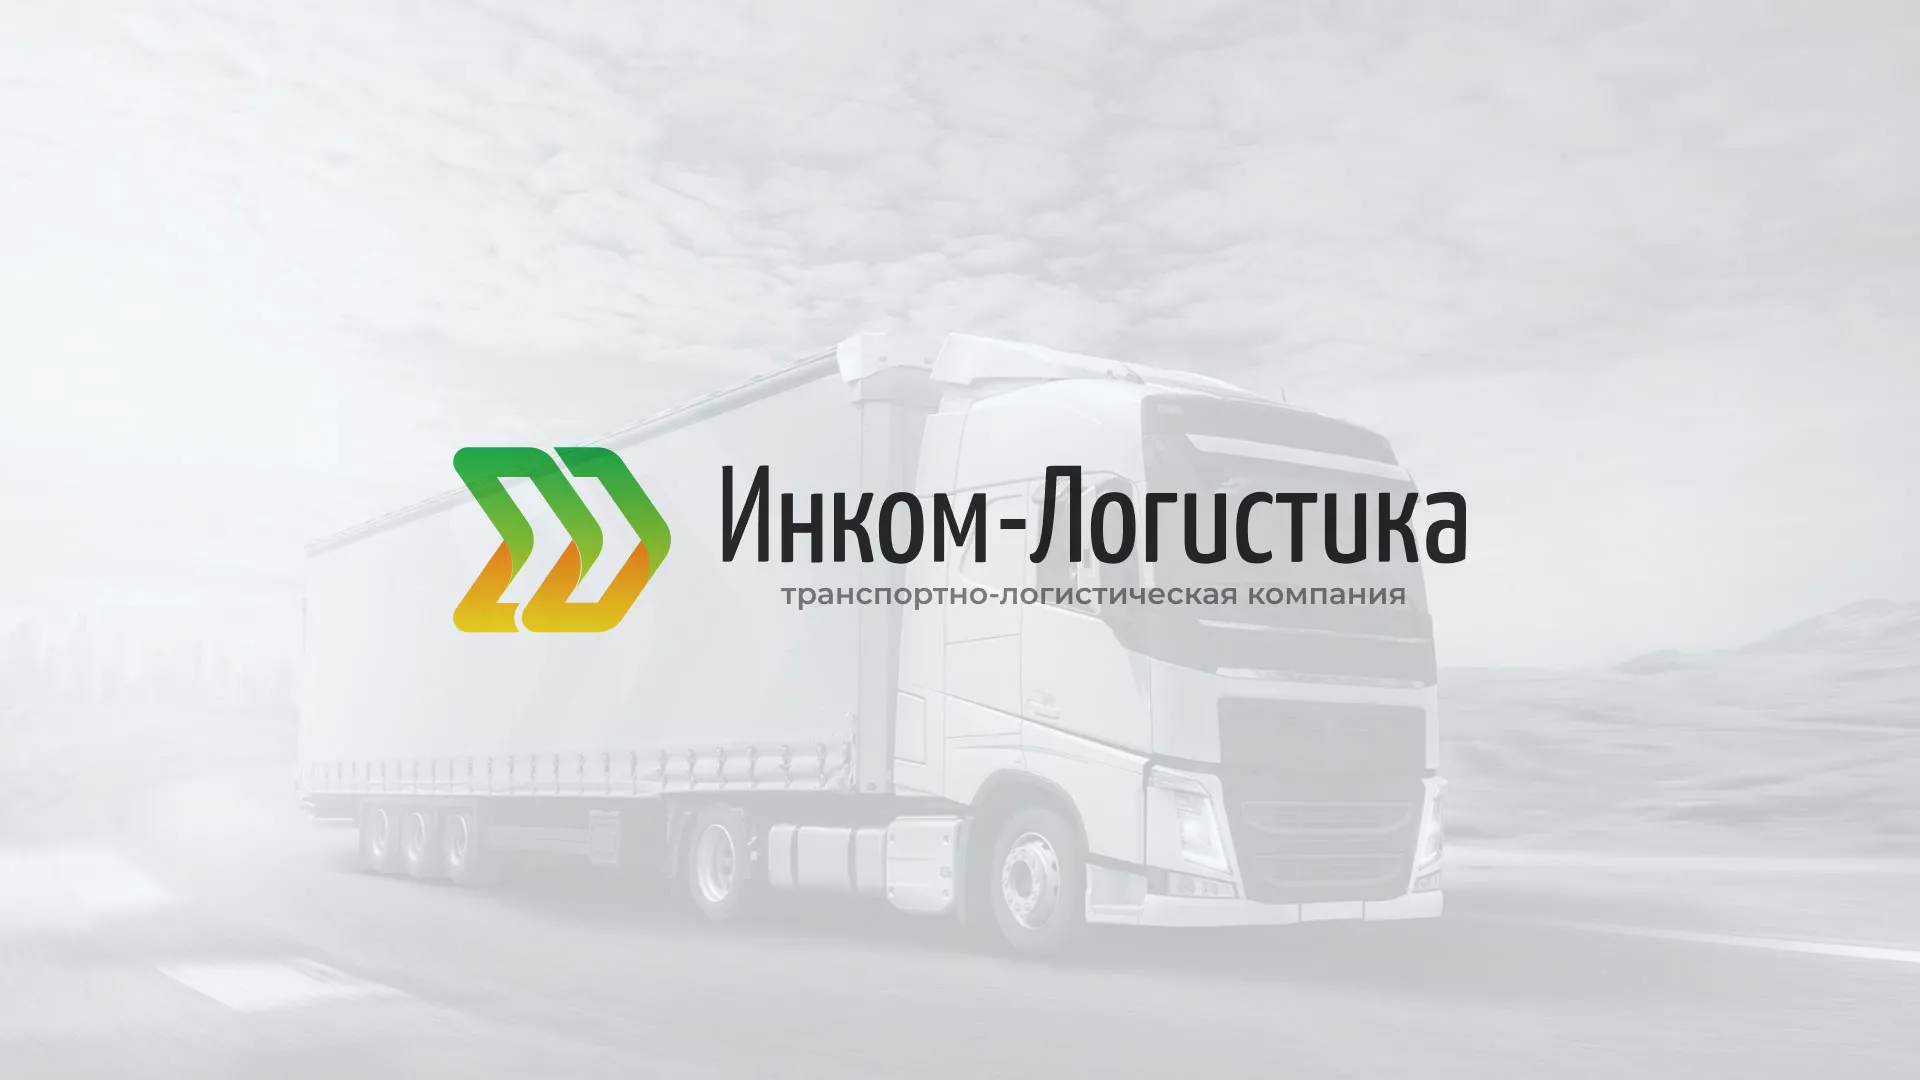 Разработка логотипа и сайта компании «Инком-Логистика» в Старой Руссе